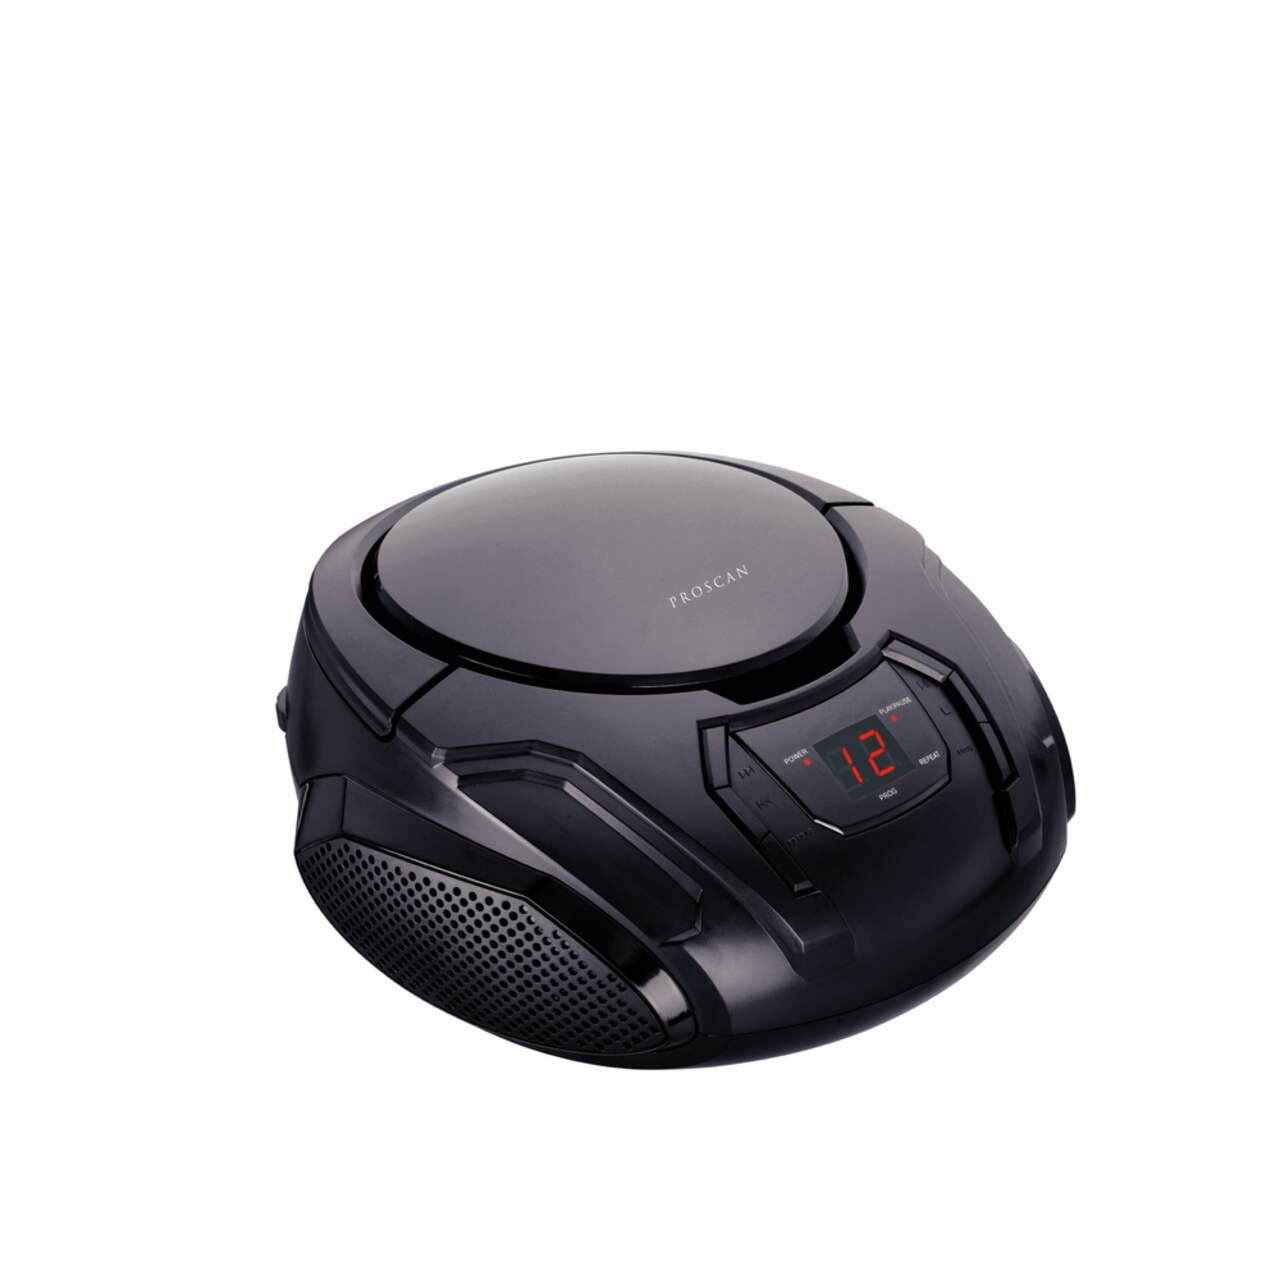 Proscan - BoomBox / Lecteur CD Portable avec Bluetooth, Radio AM/FM et